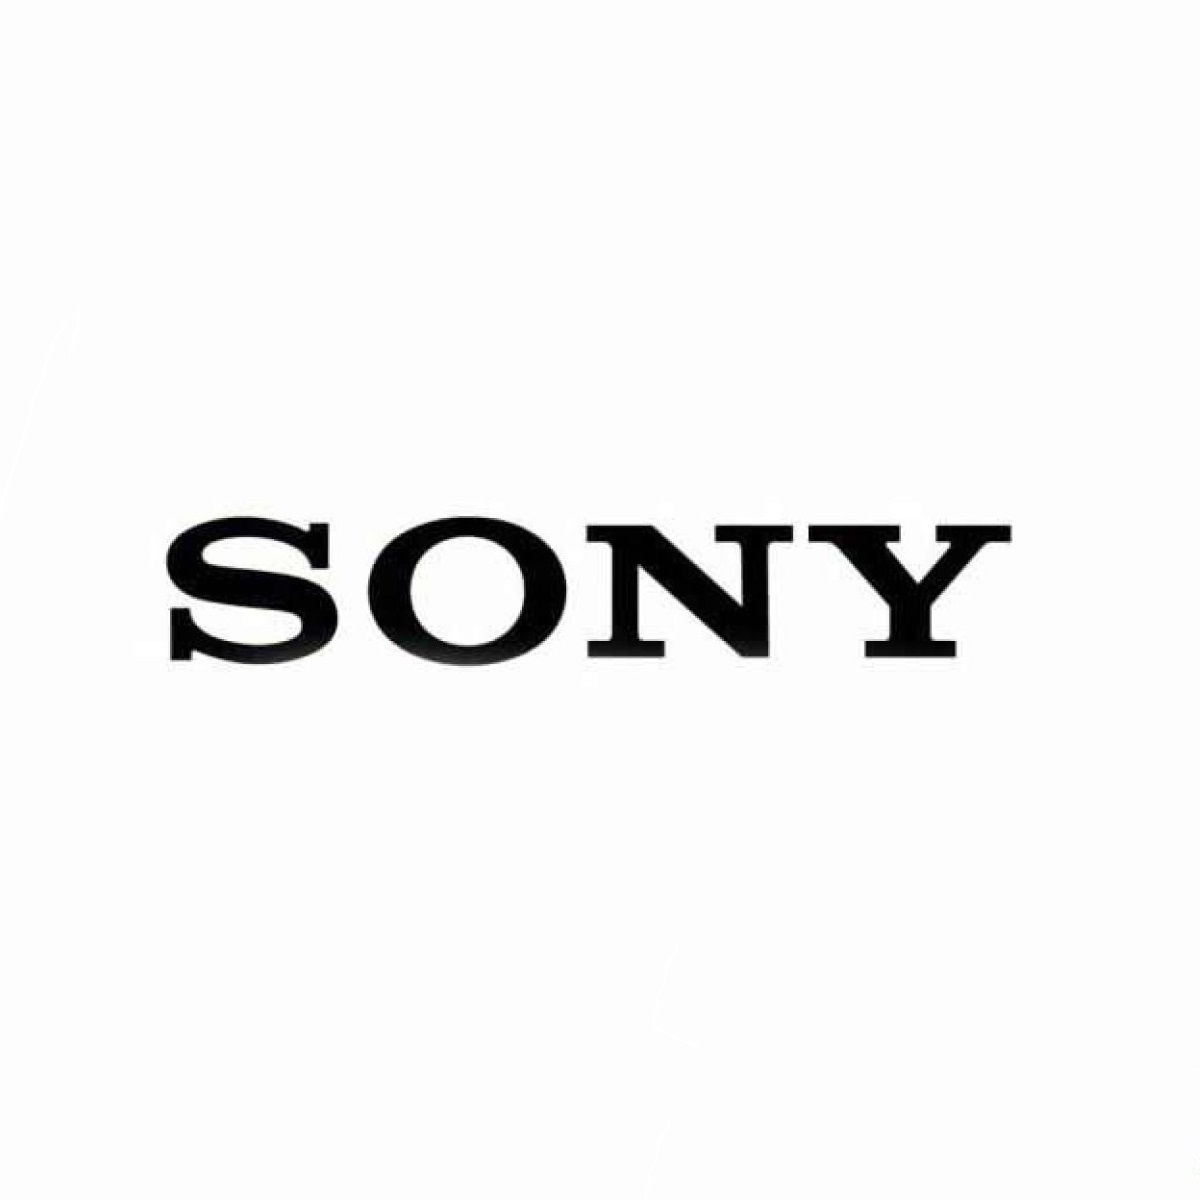 SONY Sony aluminium emblem plate silver / black aa